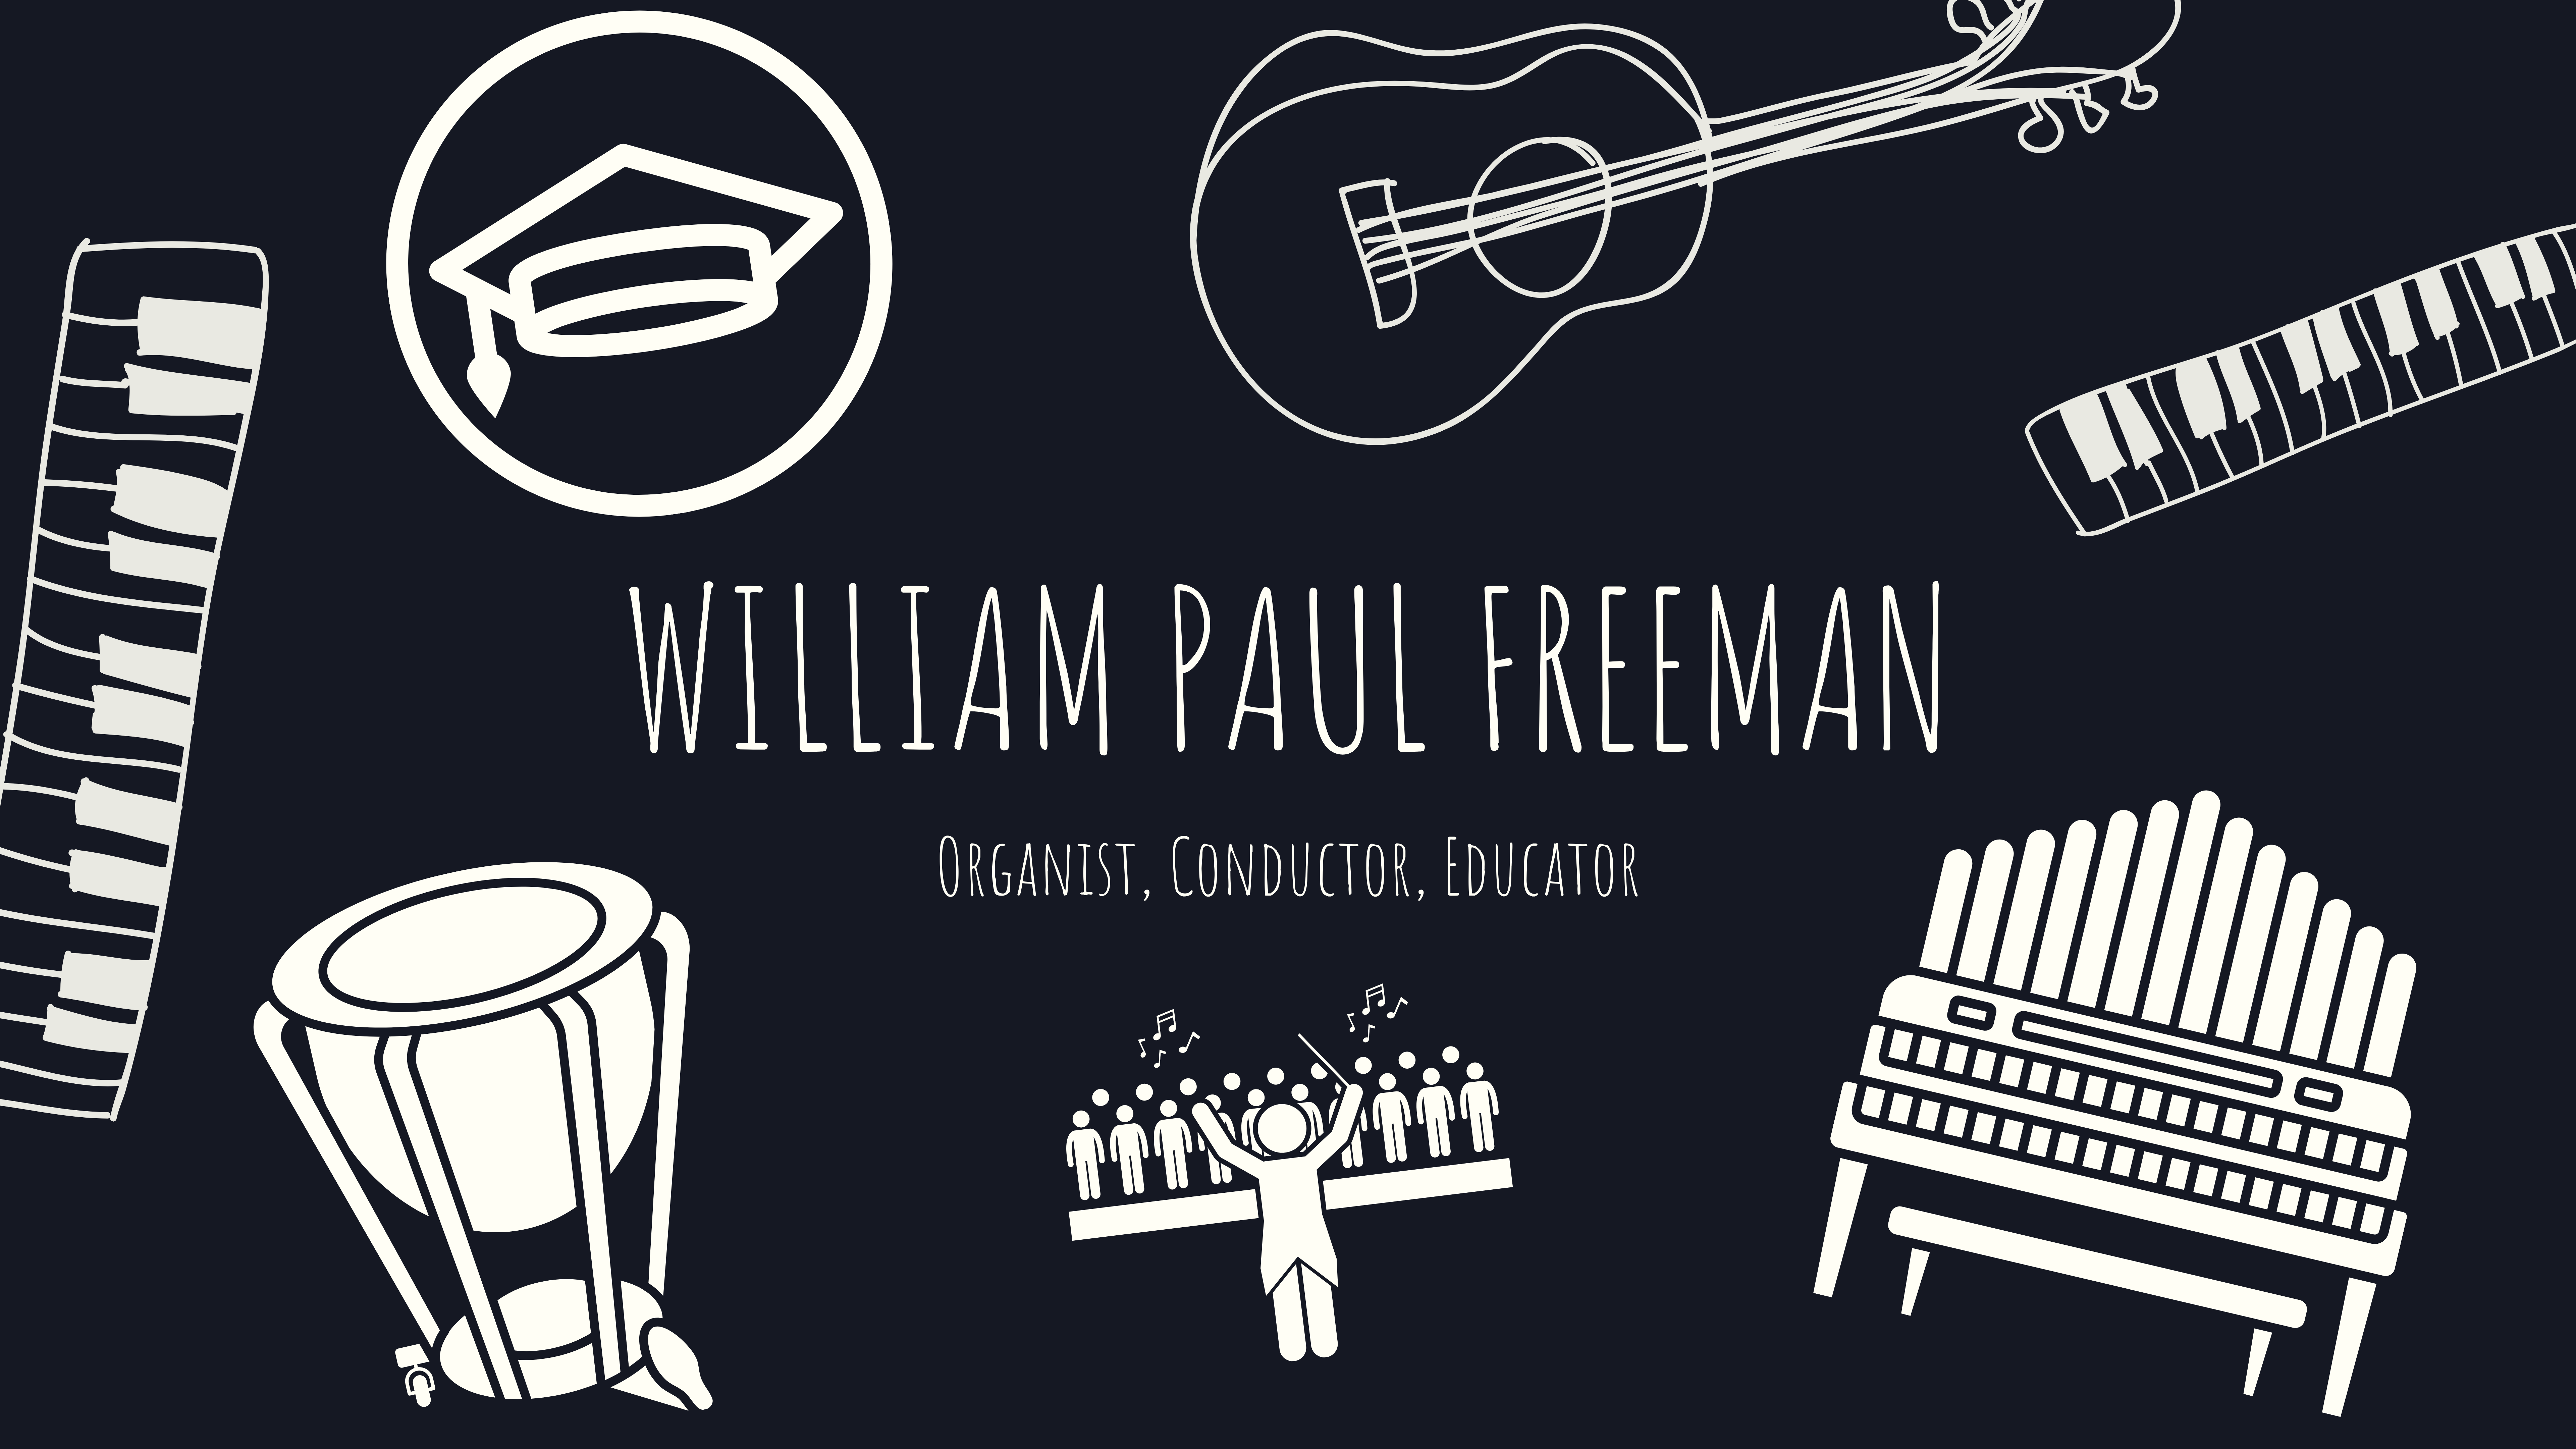 William Paul Freeman